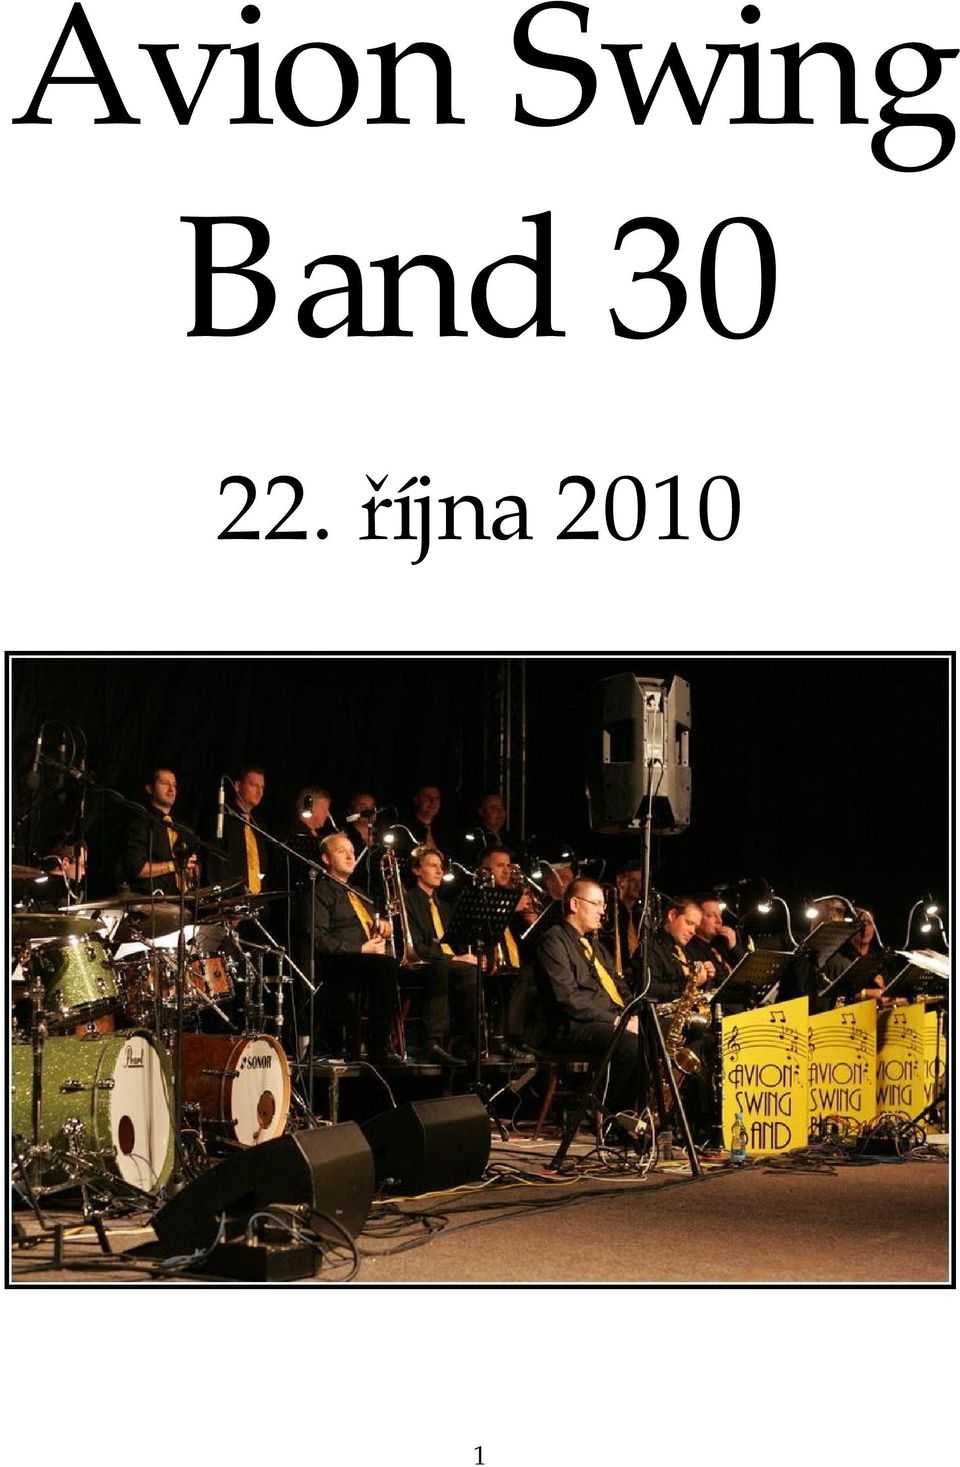 Band 30